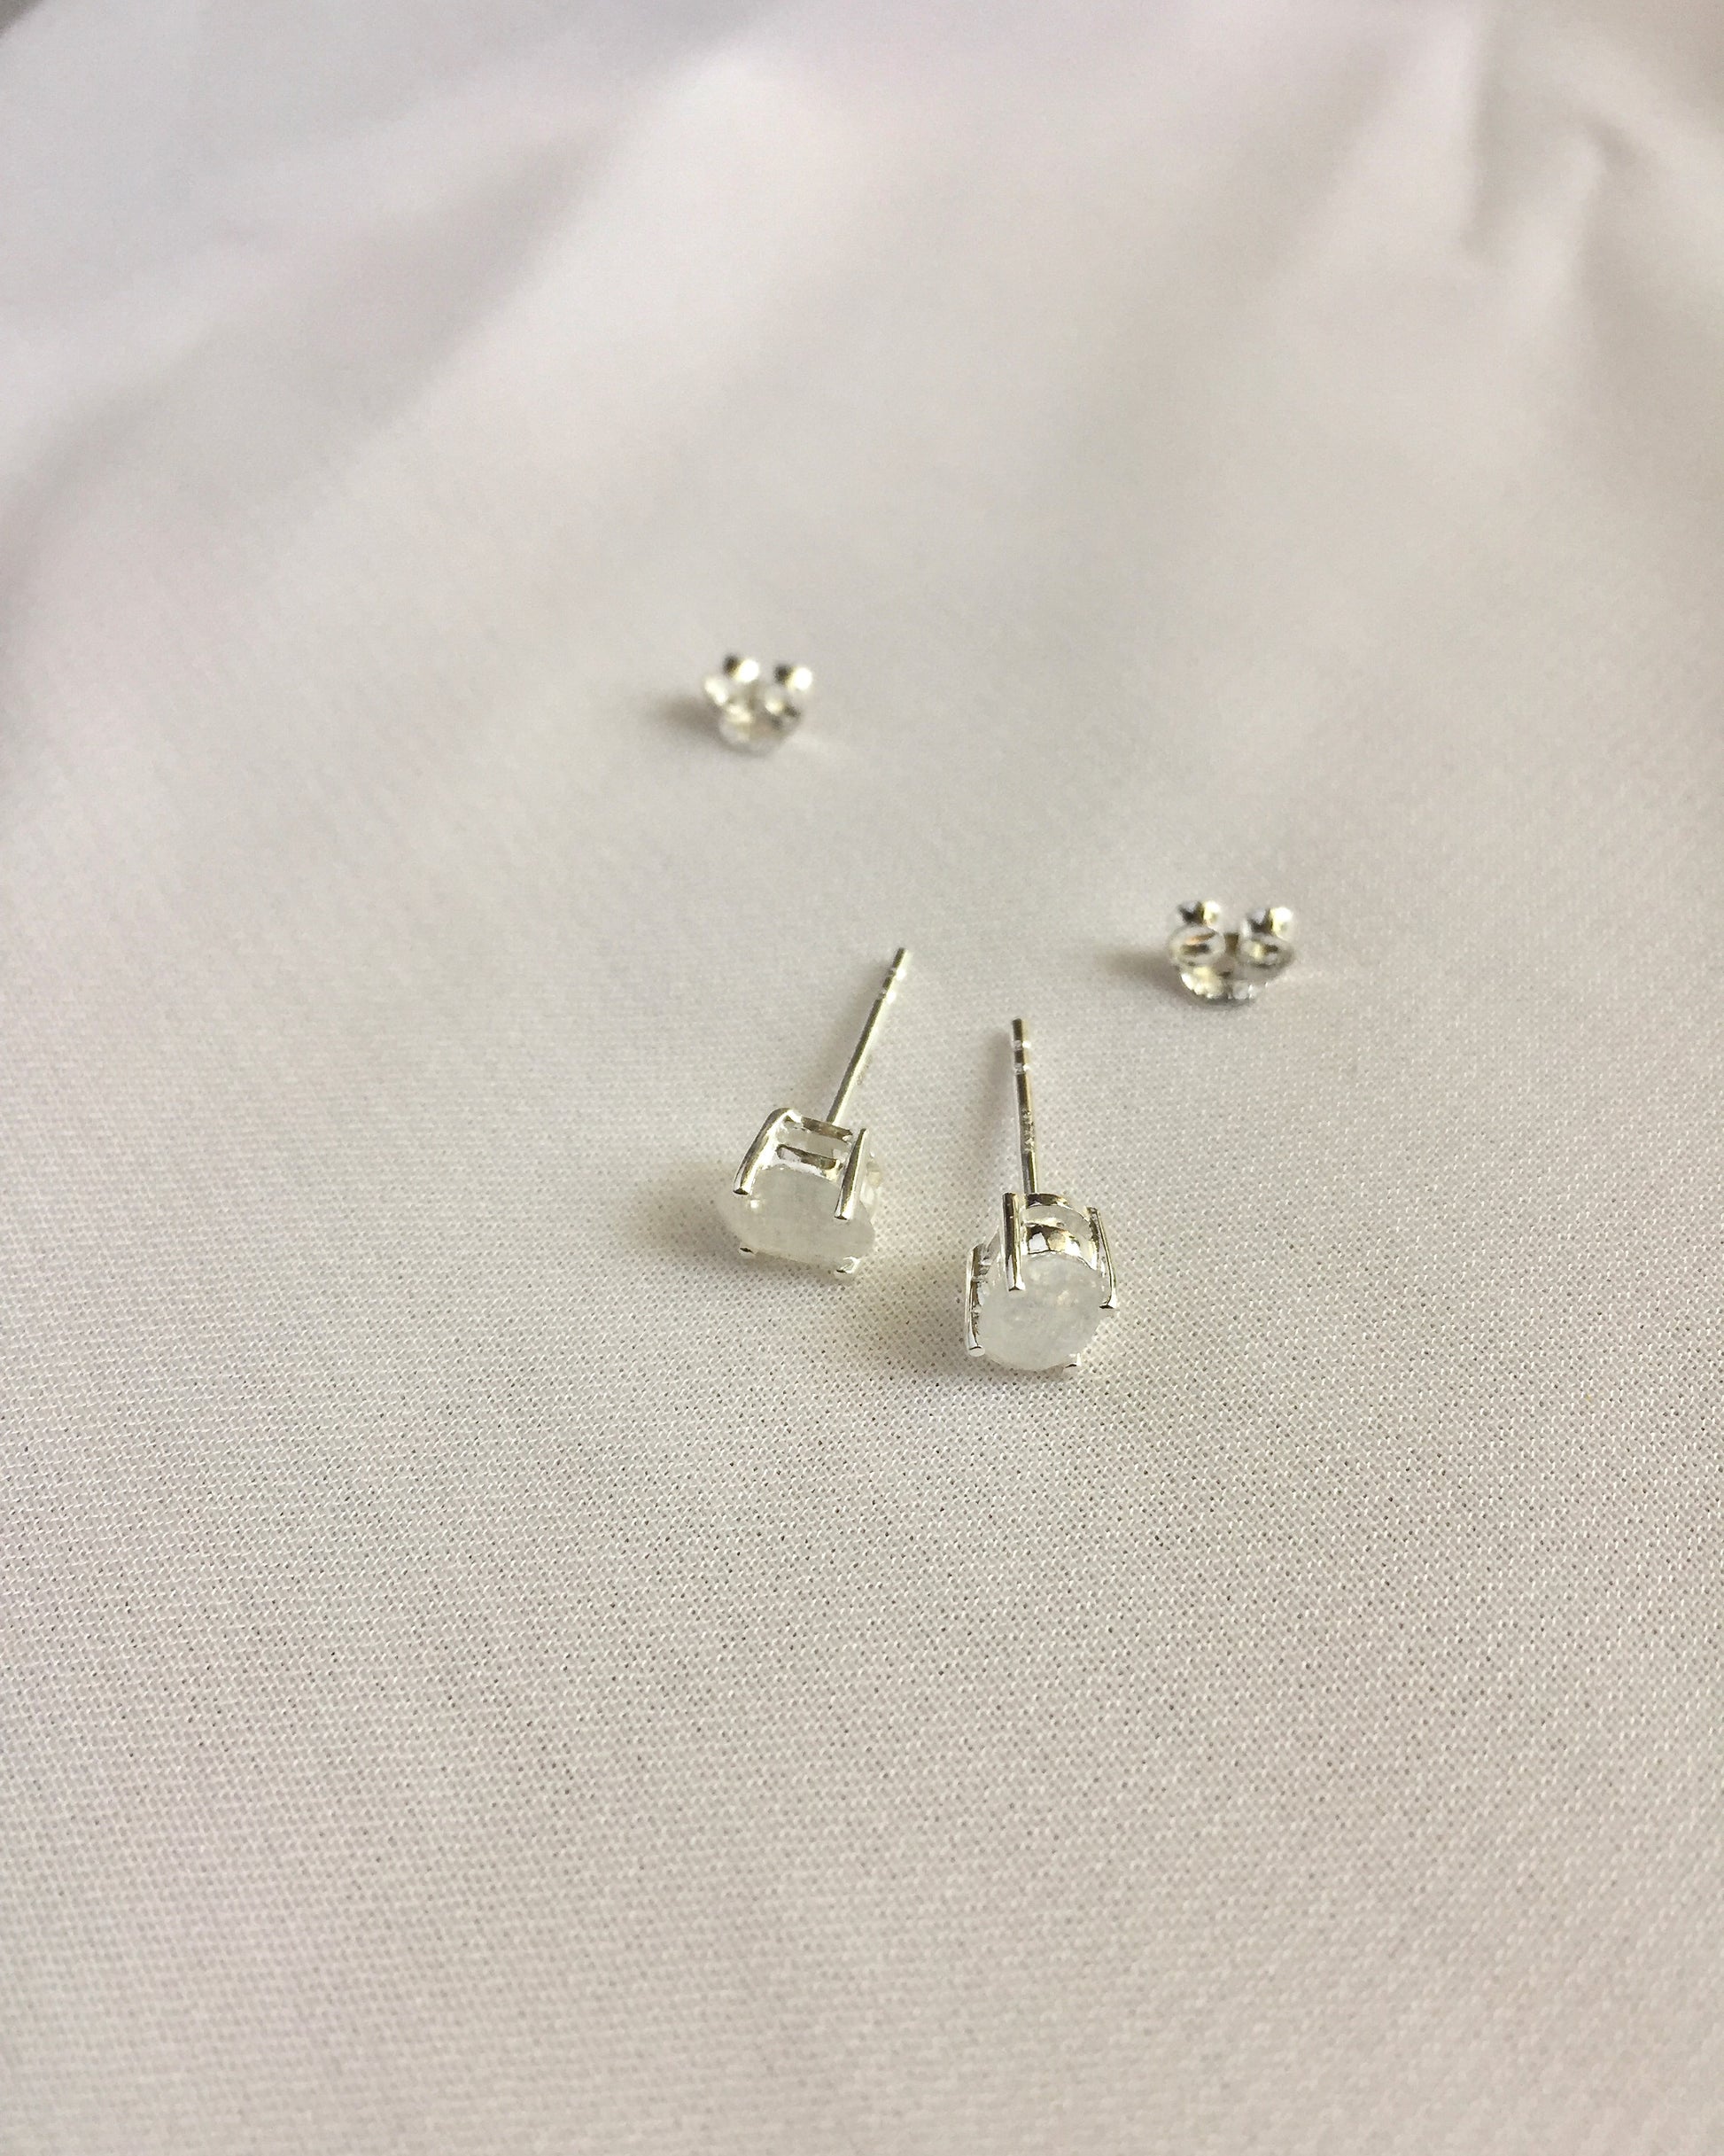 Small Oval Rainbow Moonstone Stud Earrings | Dainty Stud Earrings | Delicate Gemstone Earrings | IB Jewelry